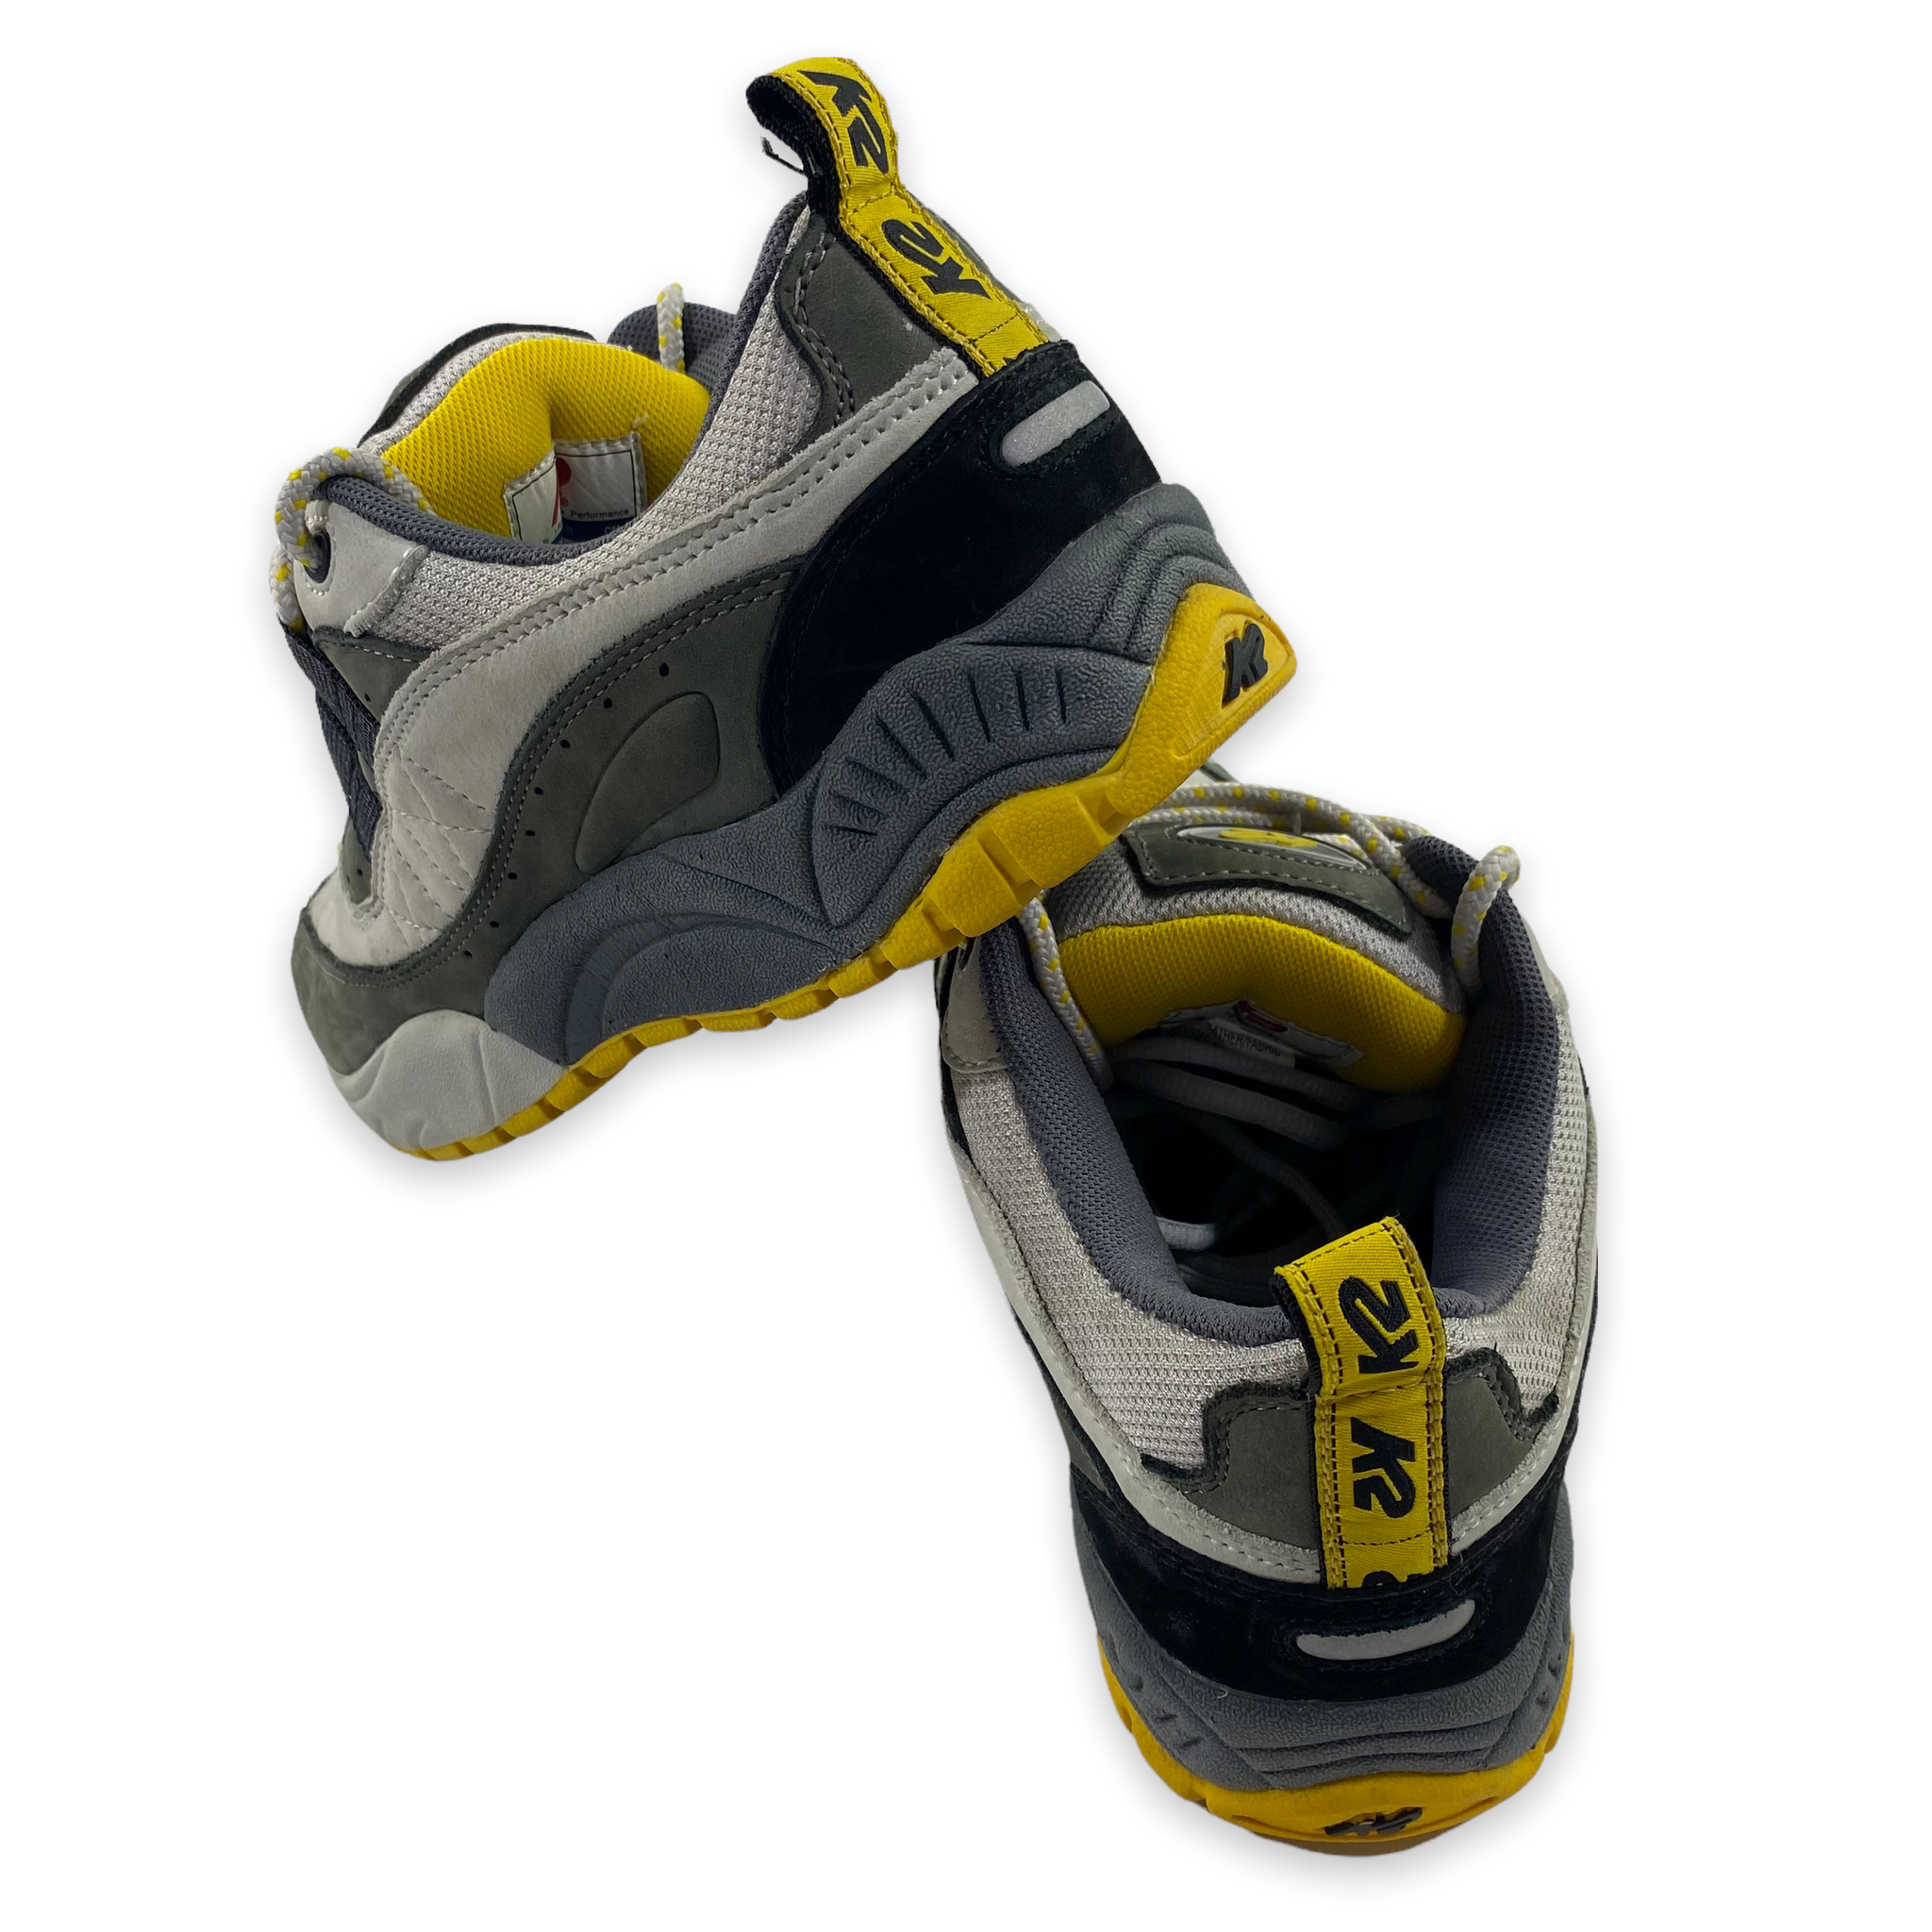 K2 sneakers 9.5